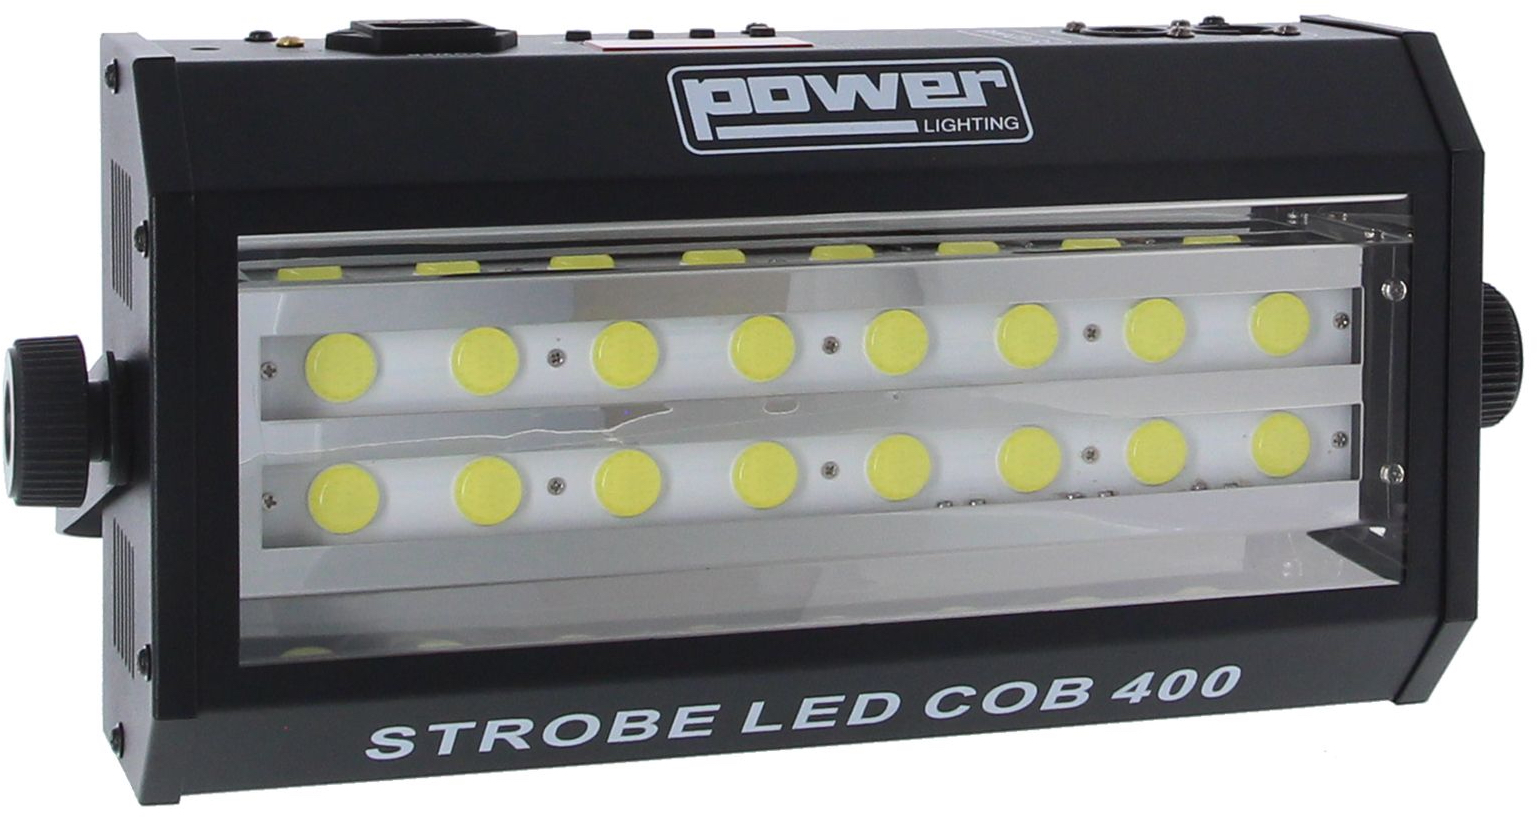 Power Lighting Strobe Led Cob 400 - Stroboscope A Led - Variation 1